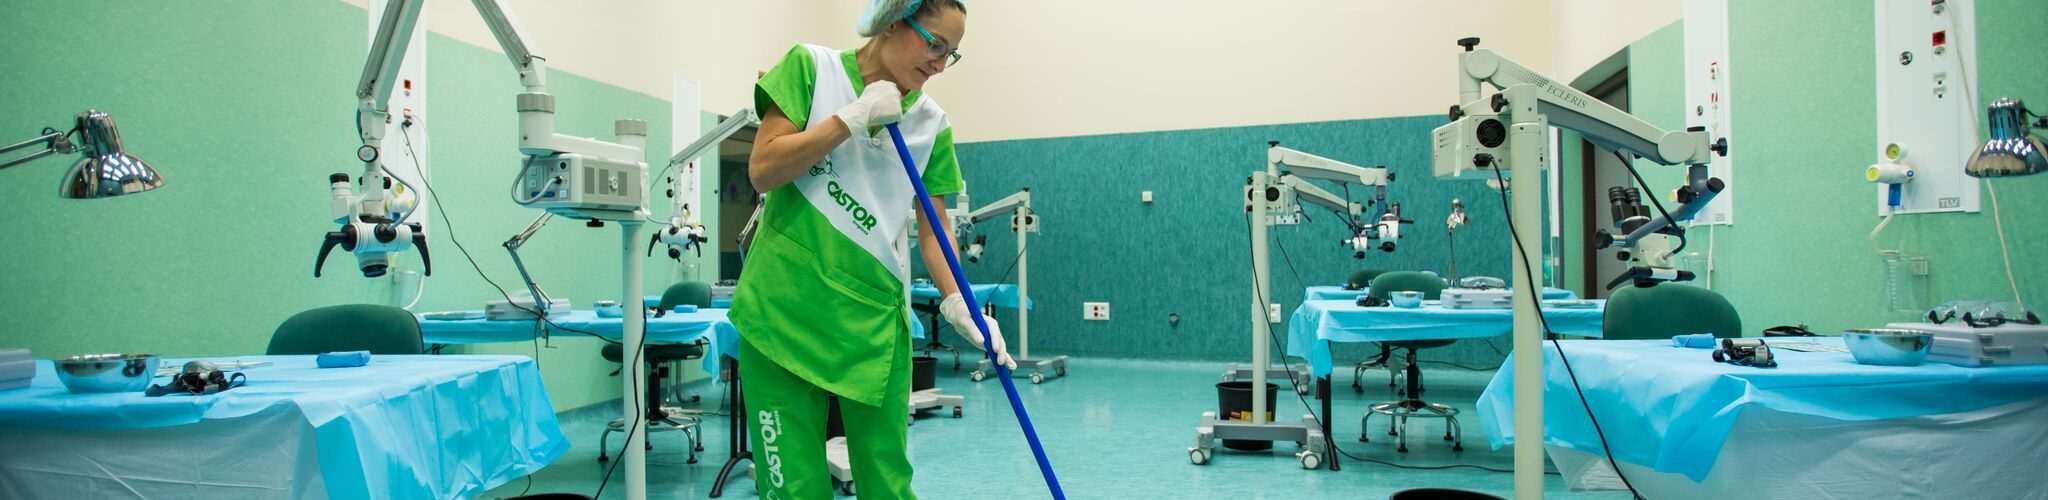 Limpiezas Castor. agencia-limpieza-malaga Limpieza de instalaciones deportivas Sevilla